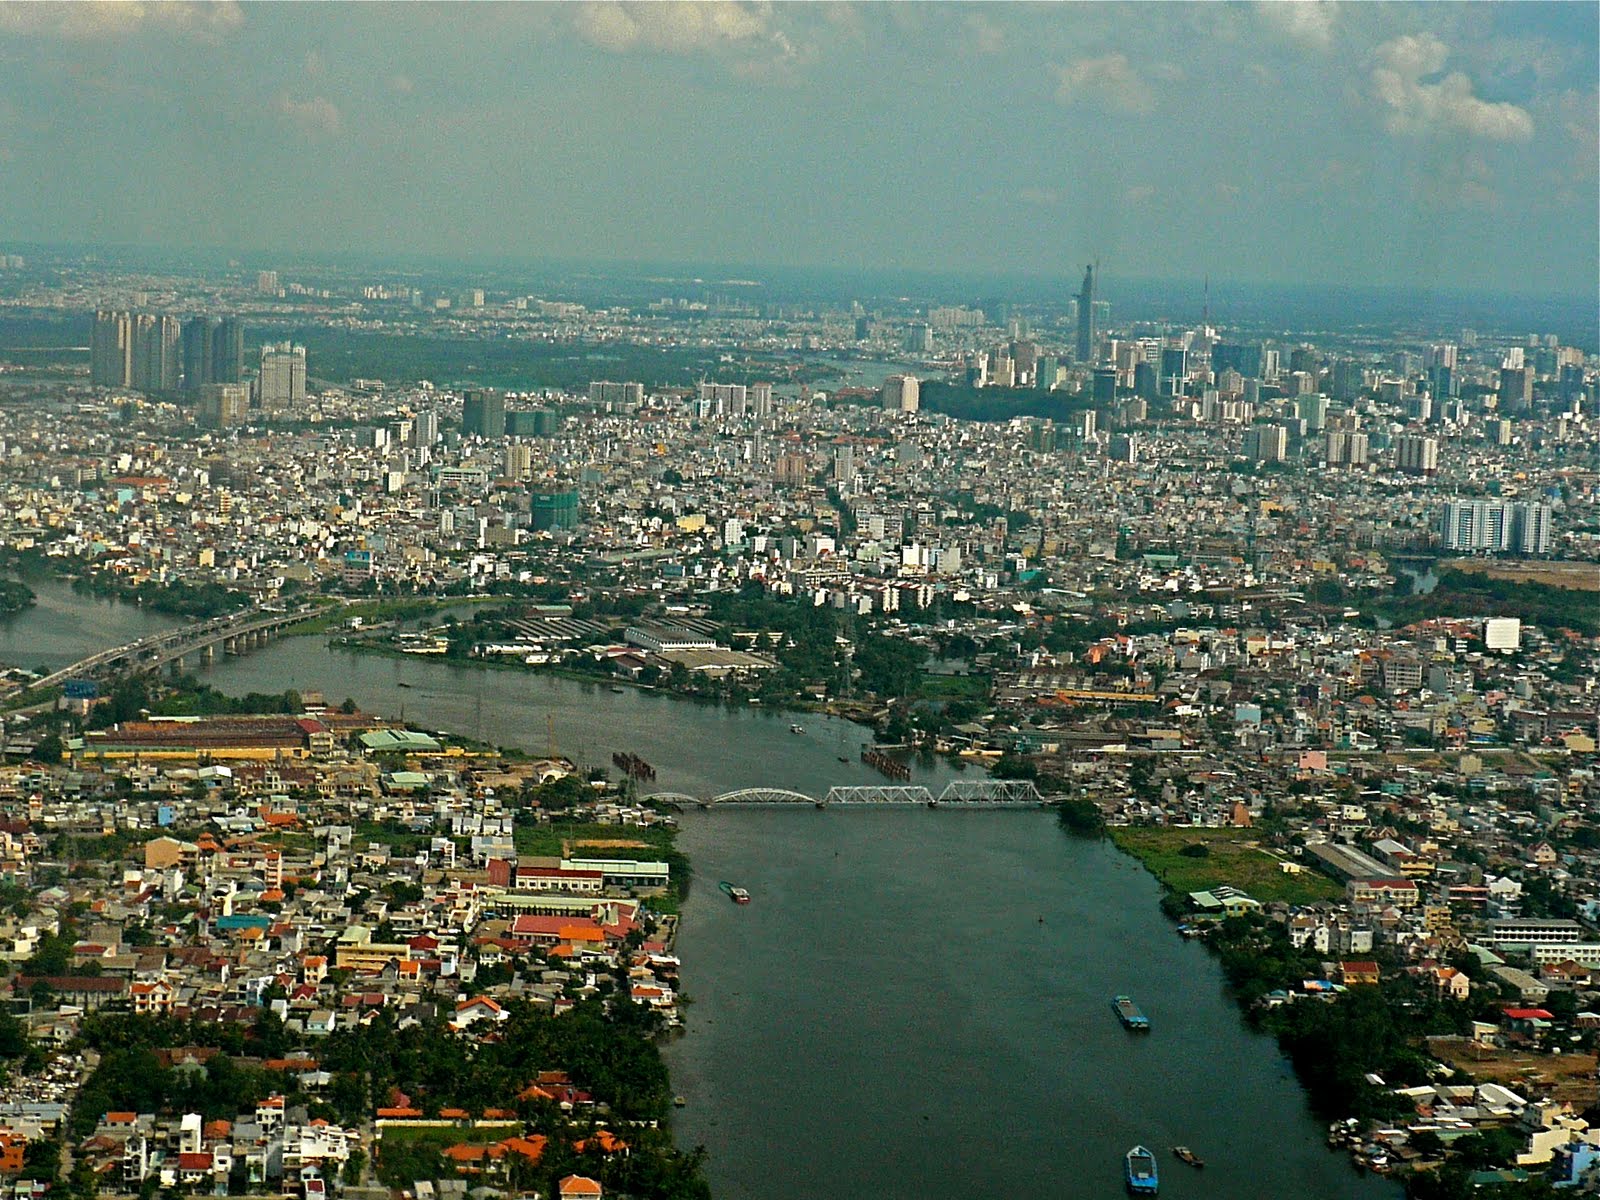 saigon today: Looking over the Saigon River and downtown